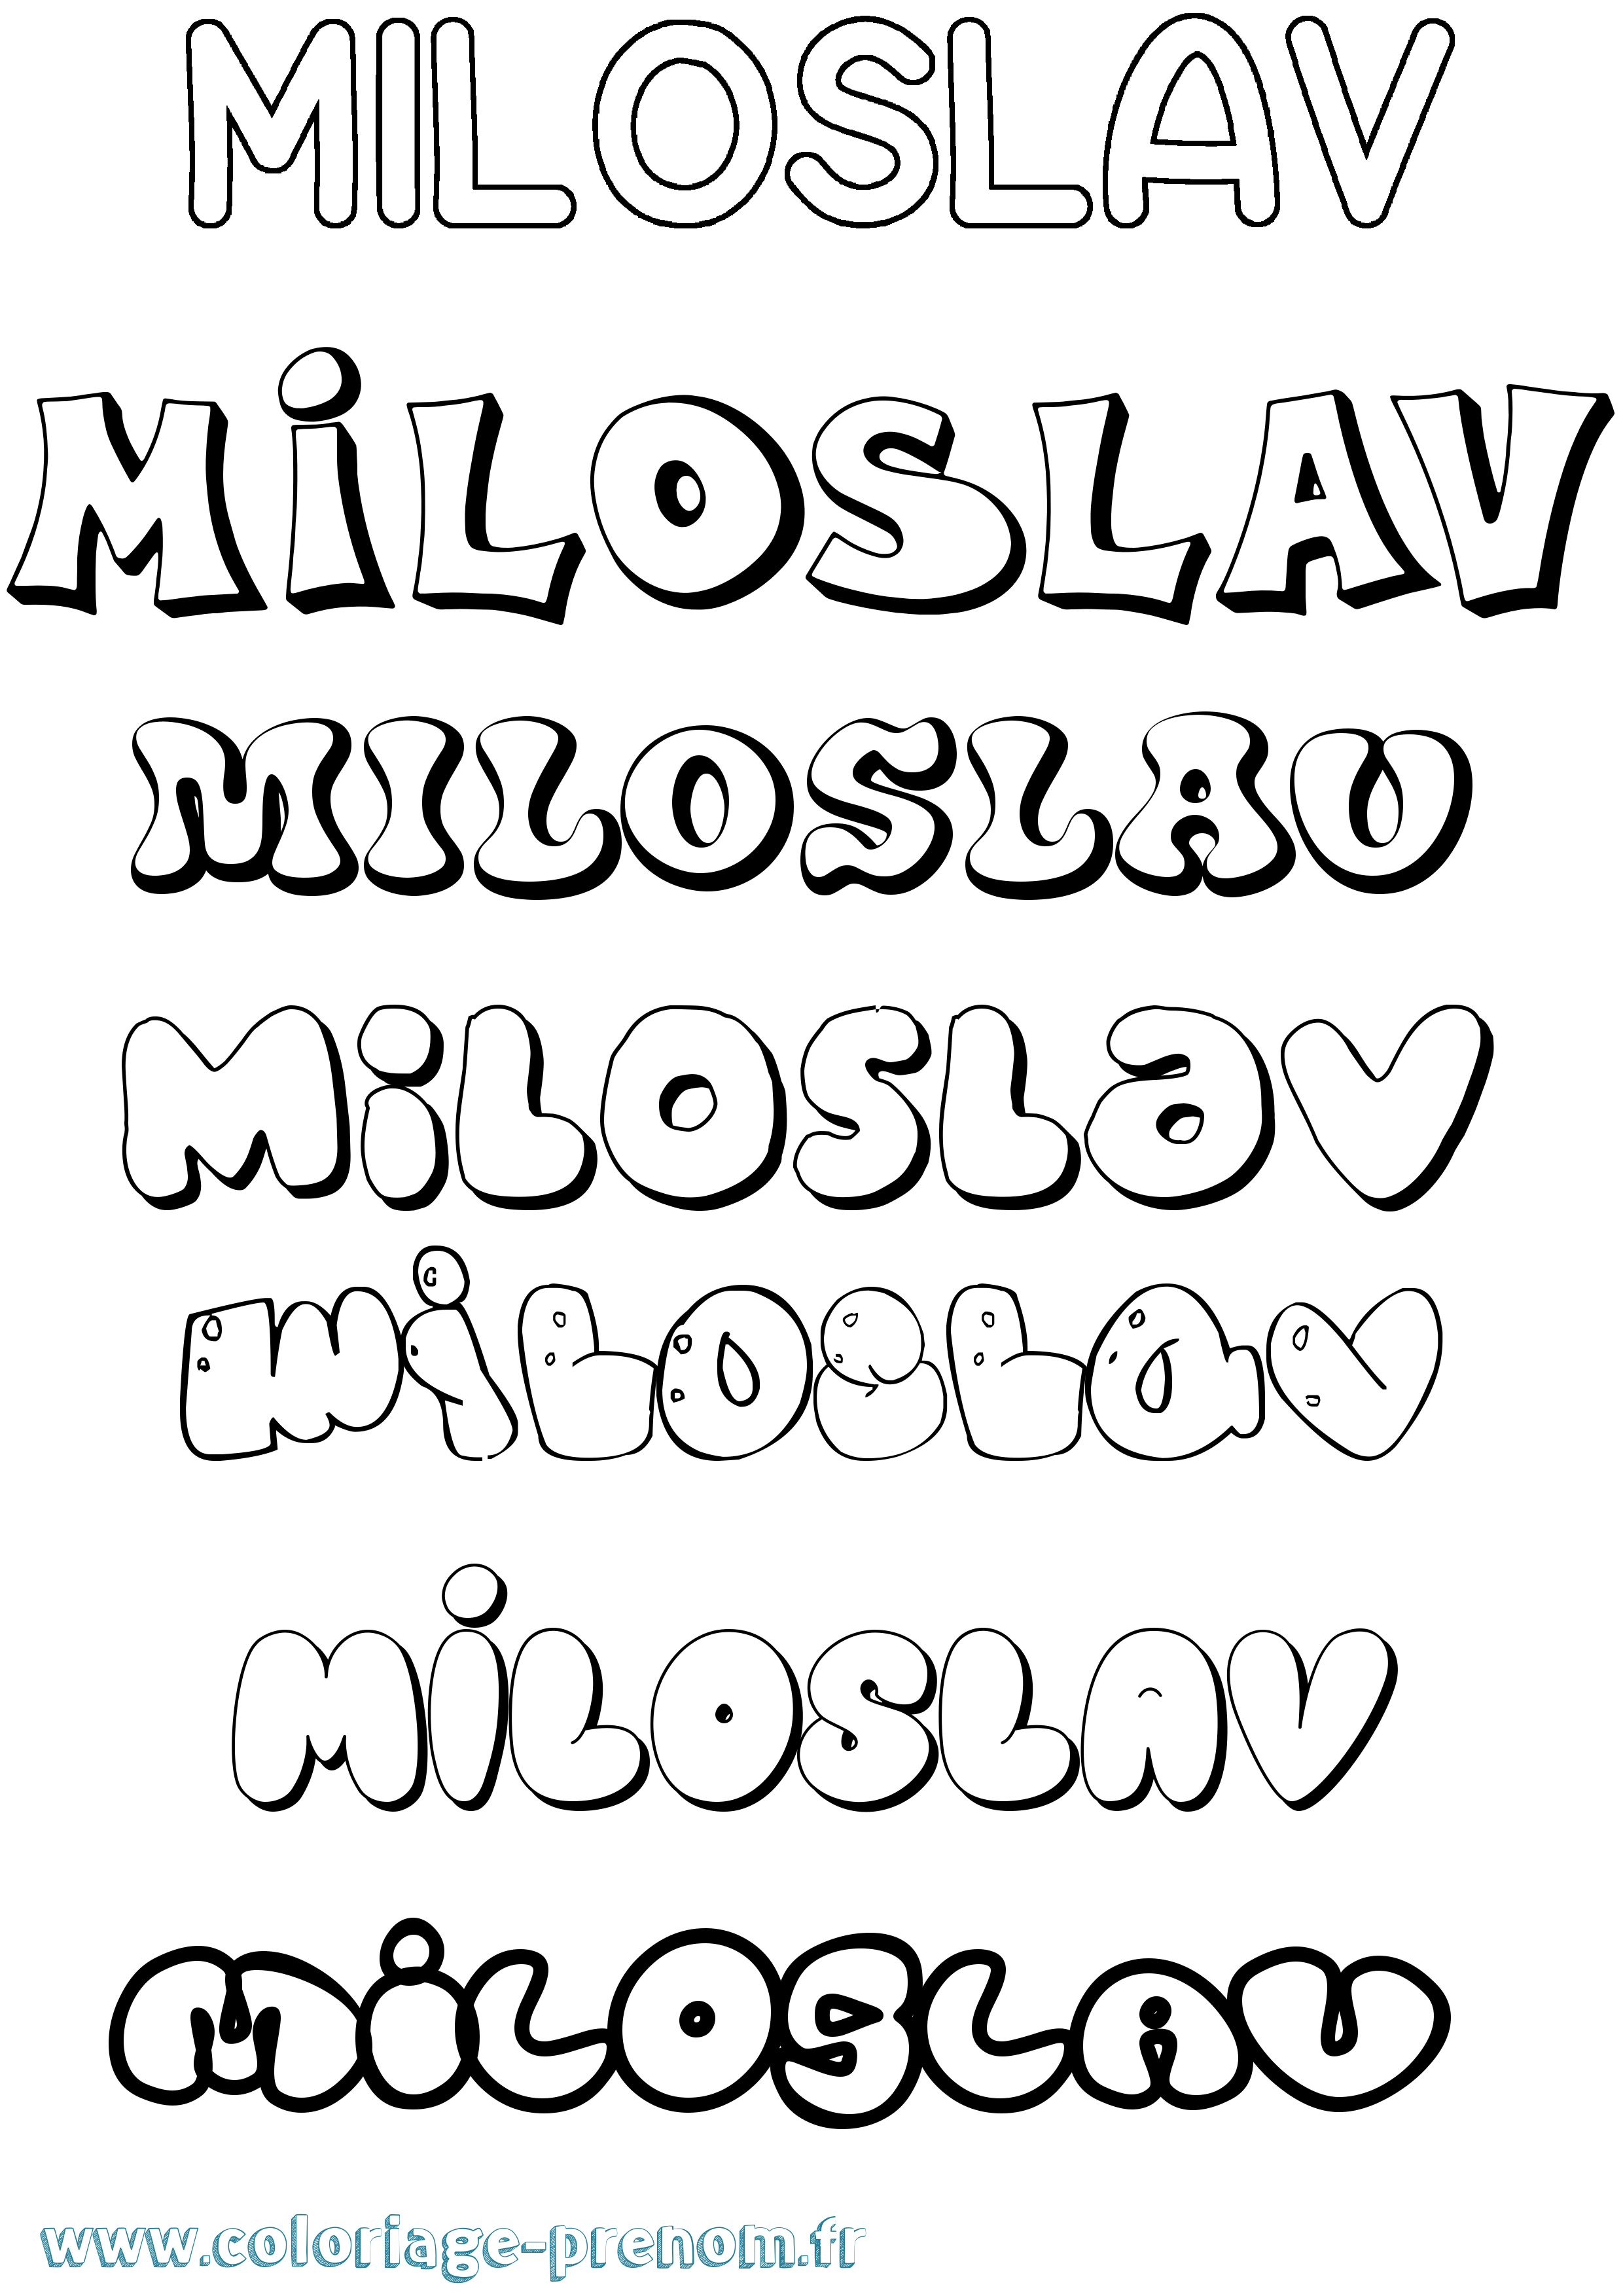 Coloriage prénom Miloslav Bubble